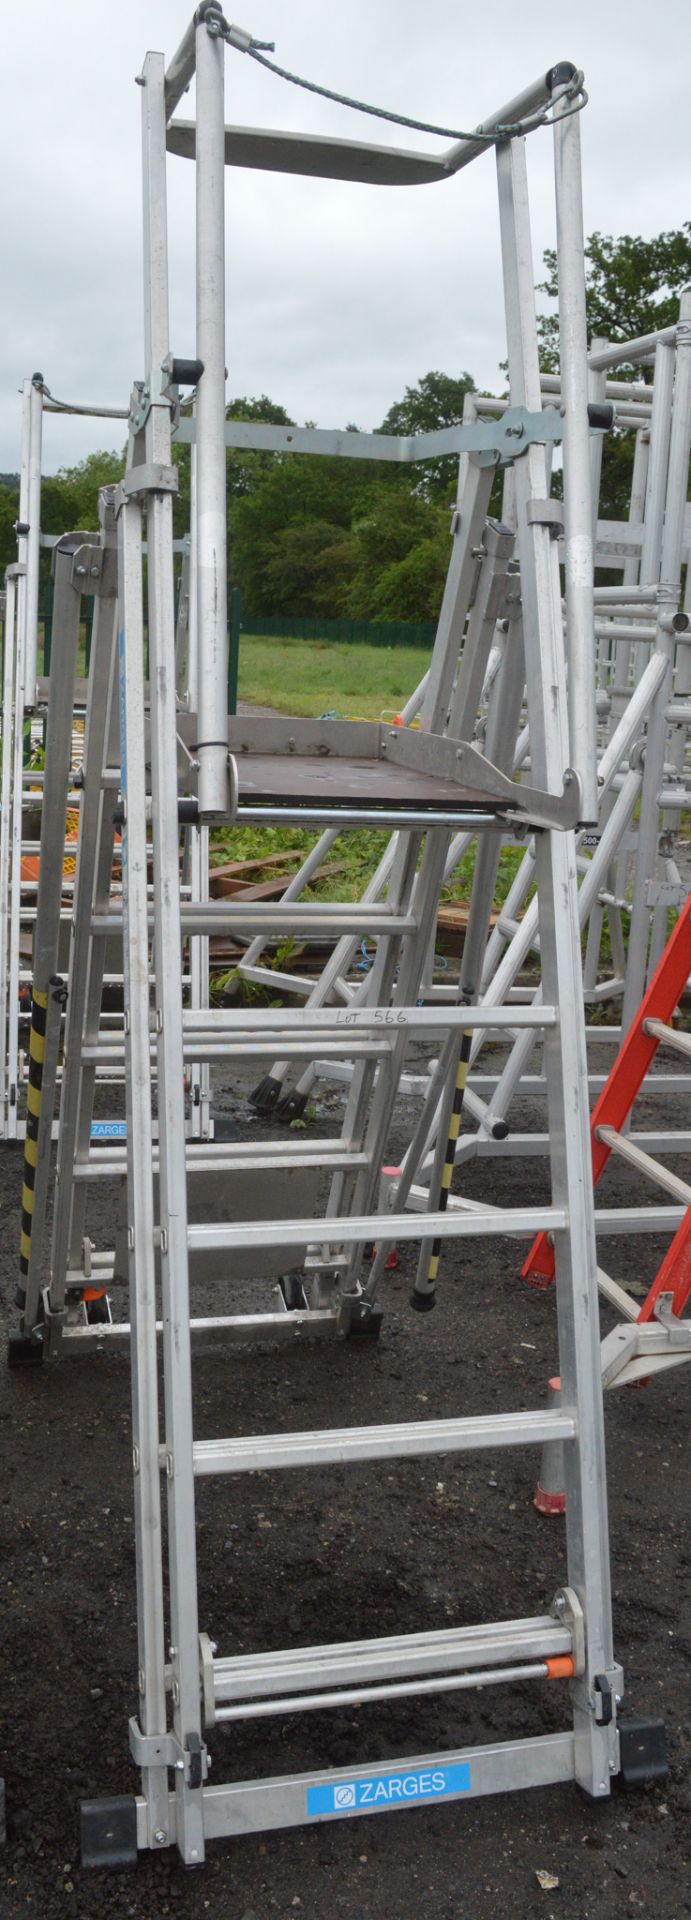 Zarges aluminium podium ladder A844586 - Image 2 of 2